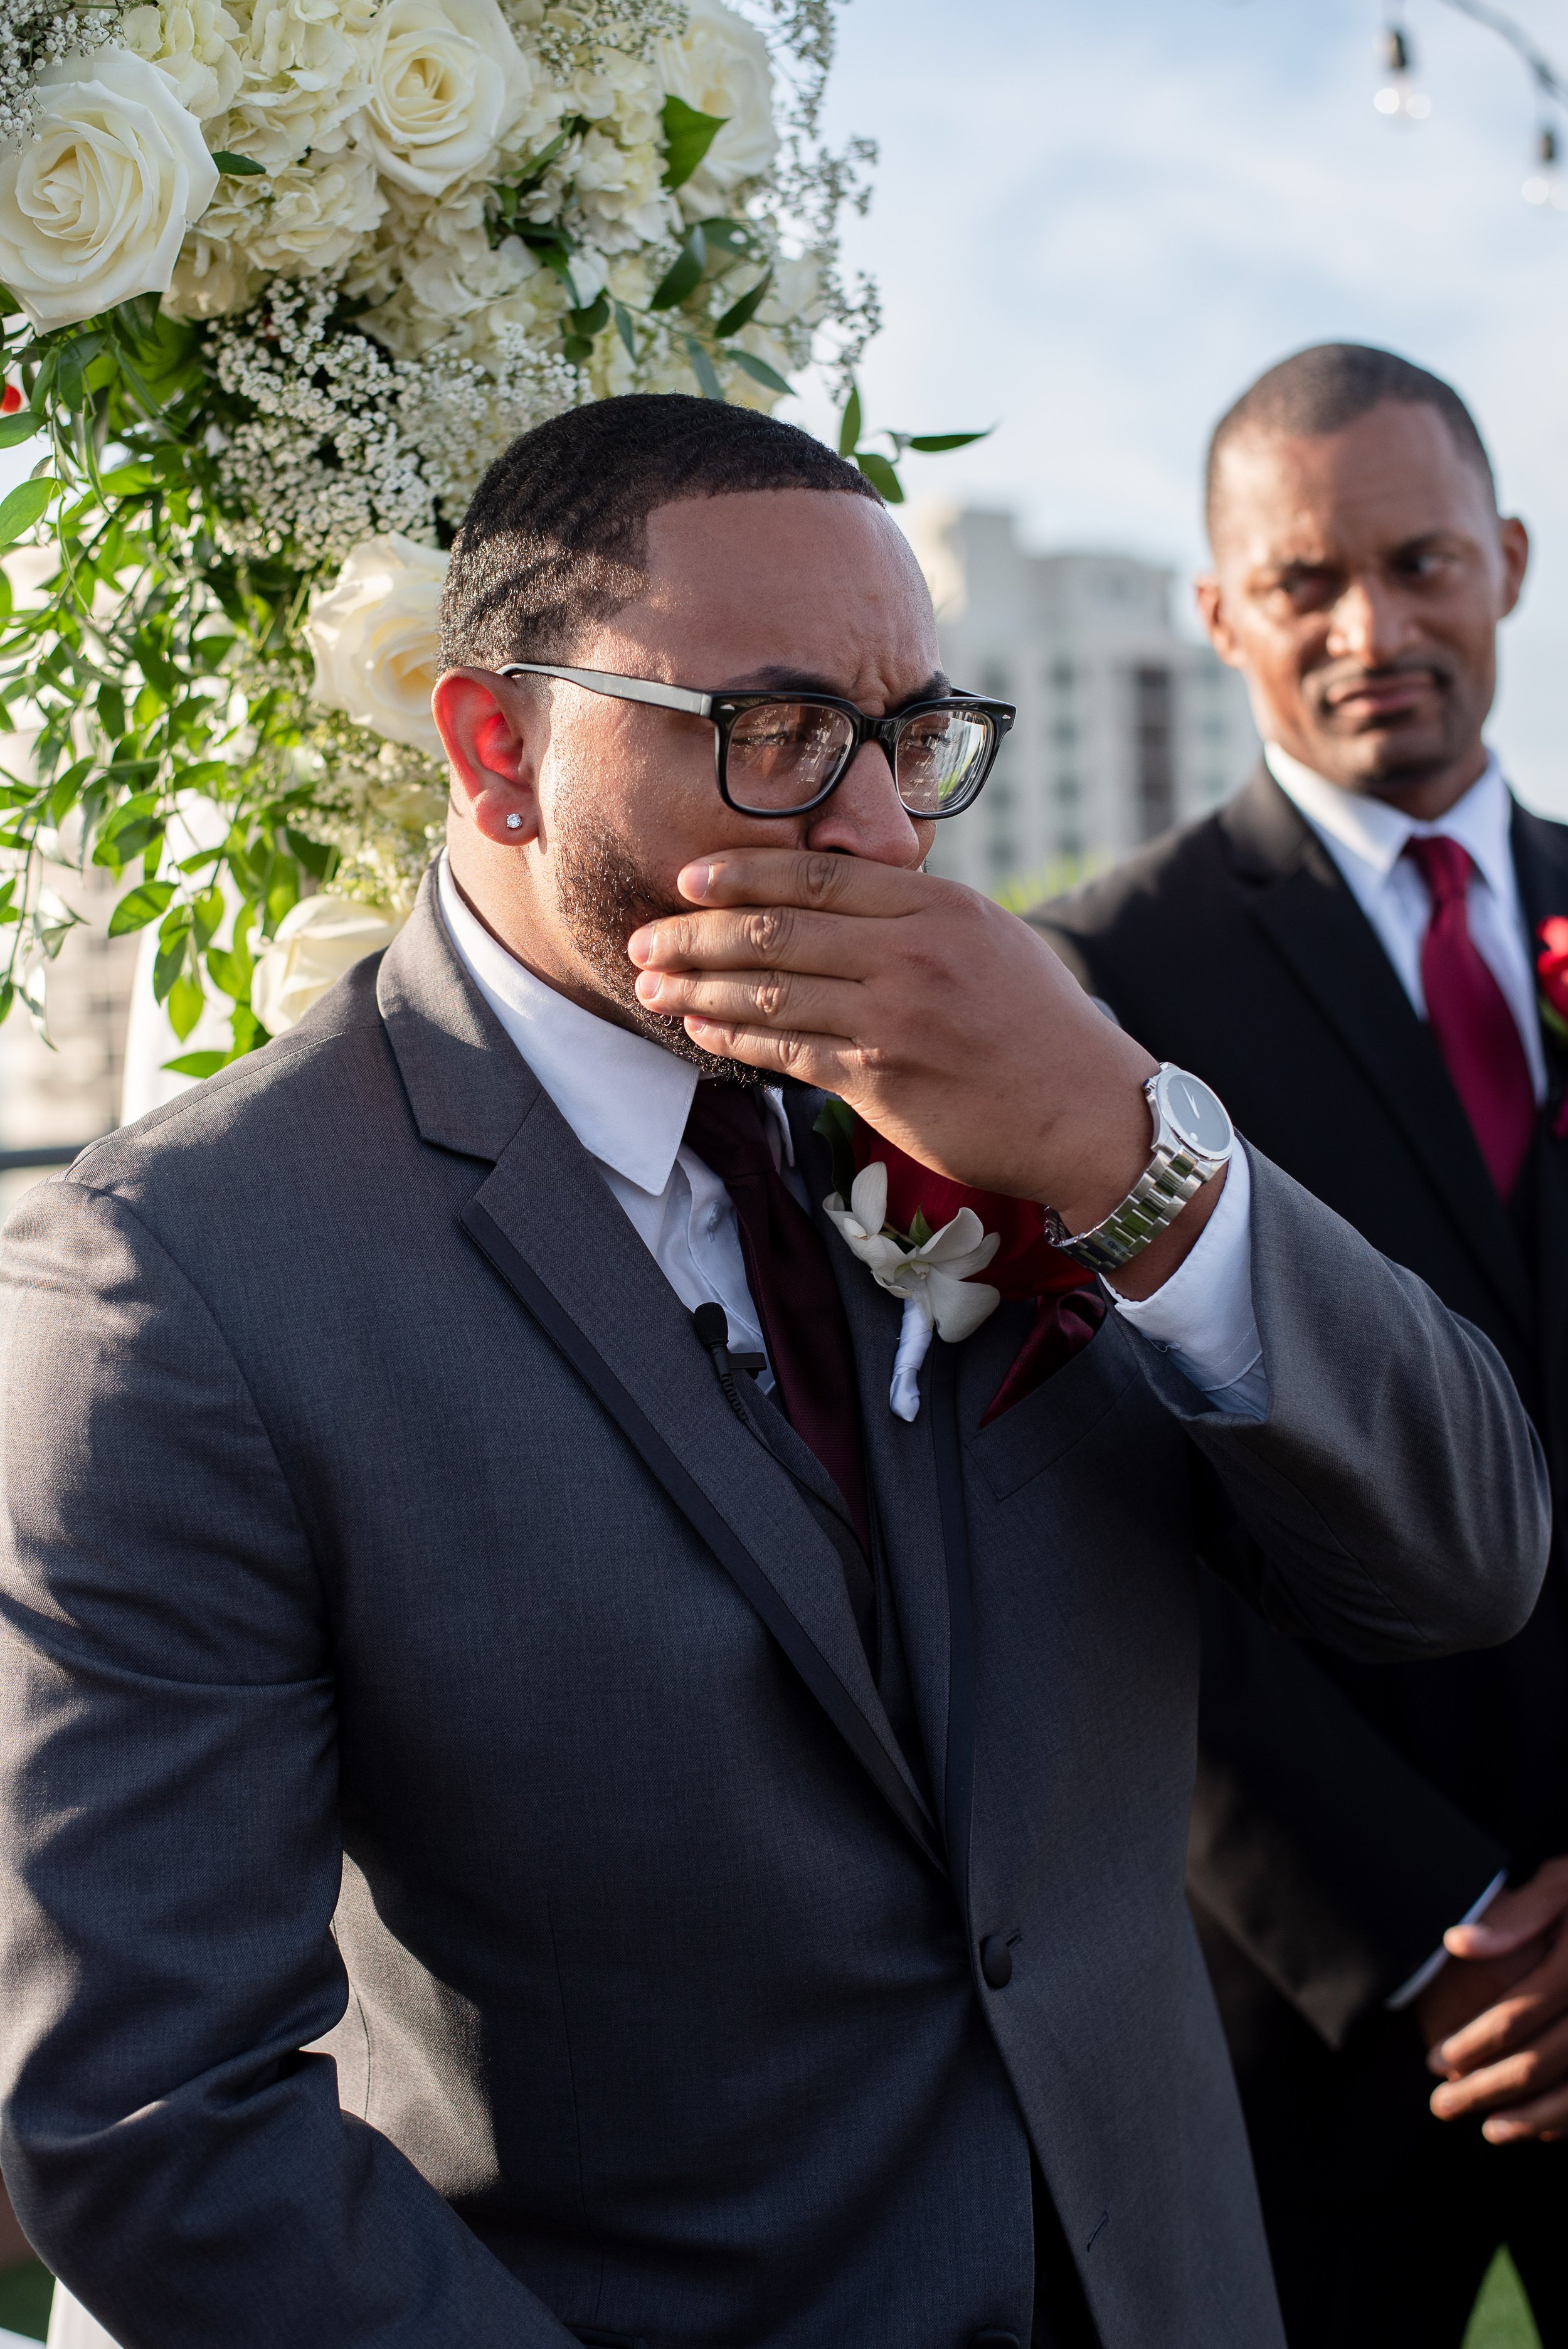 Emotional groom on wedding day